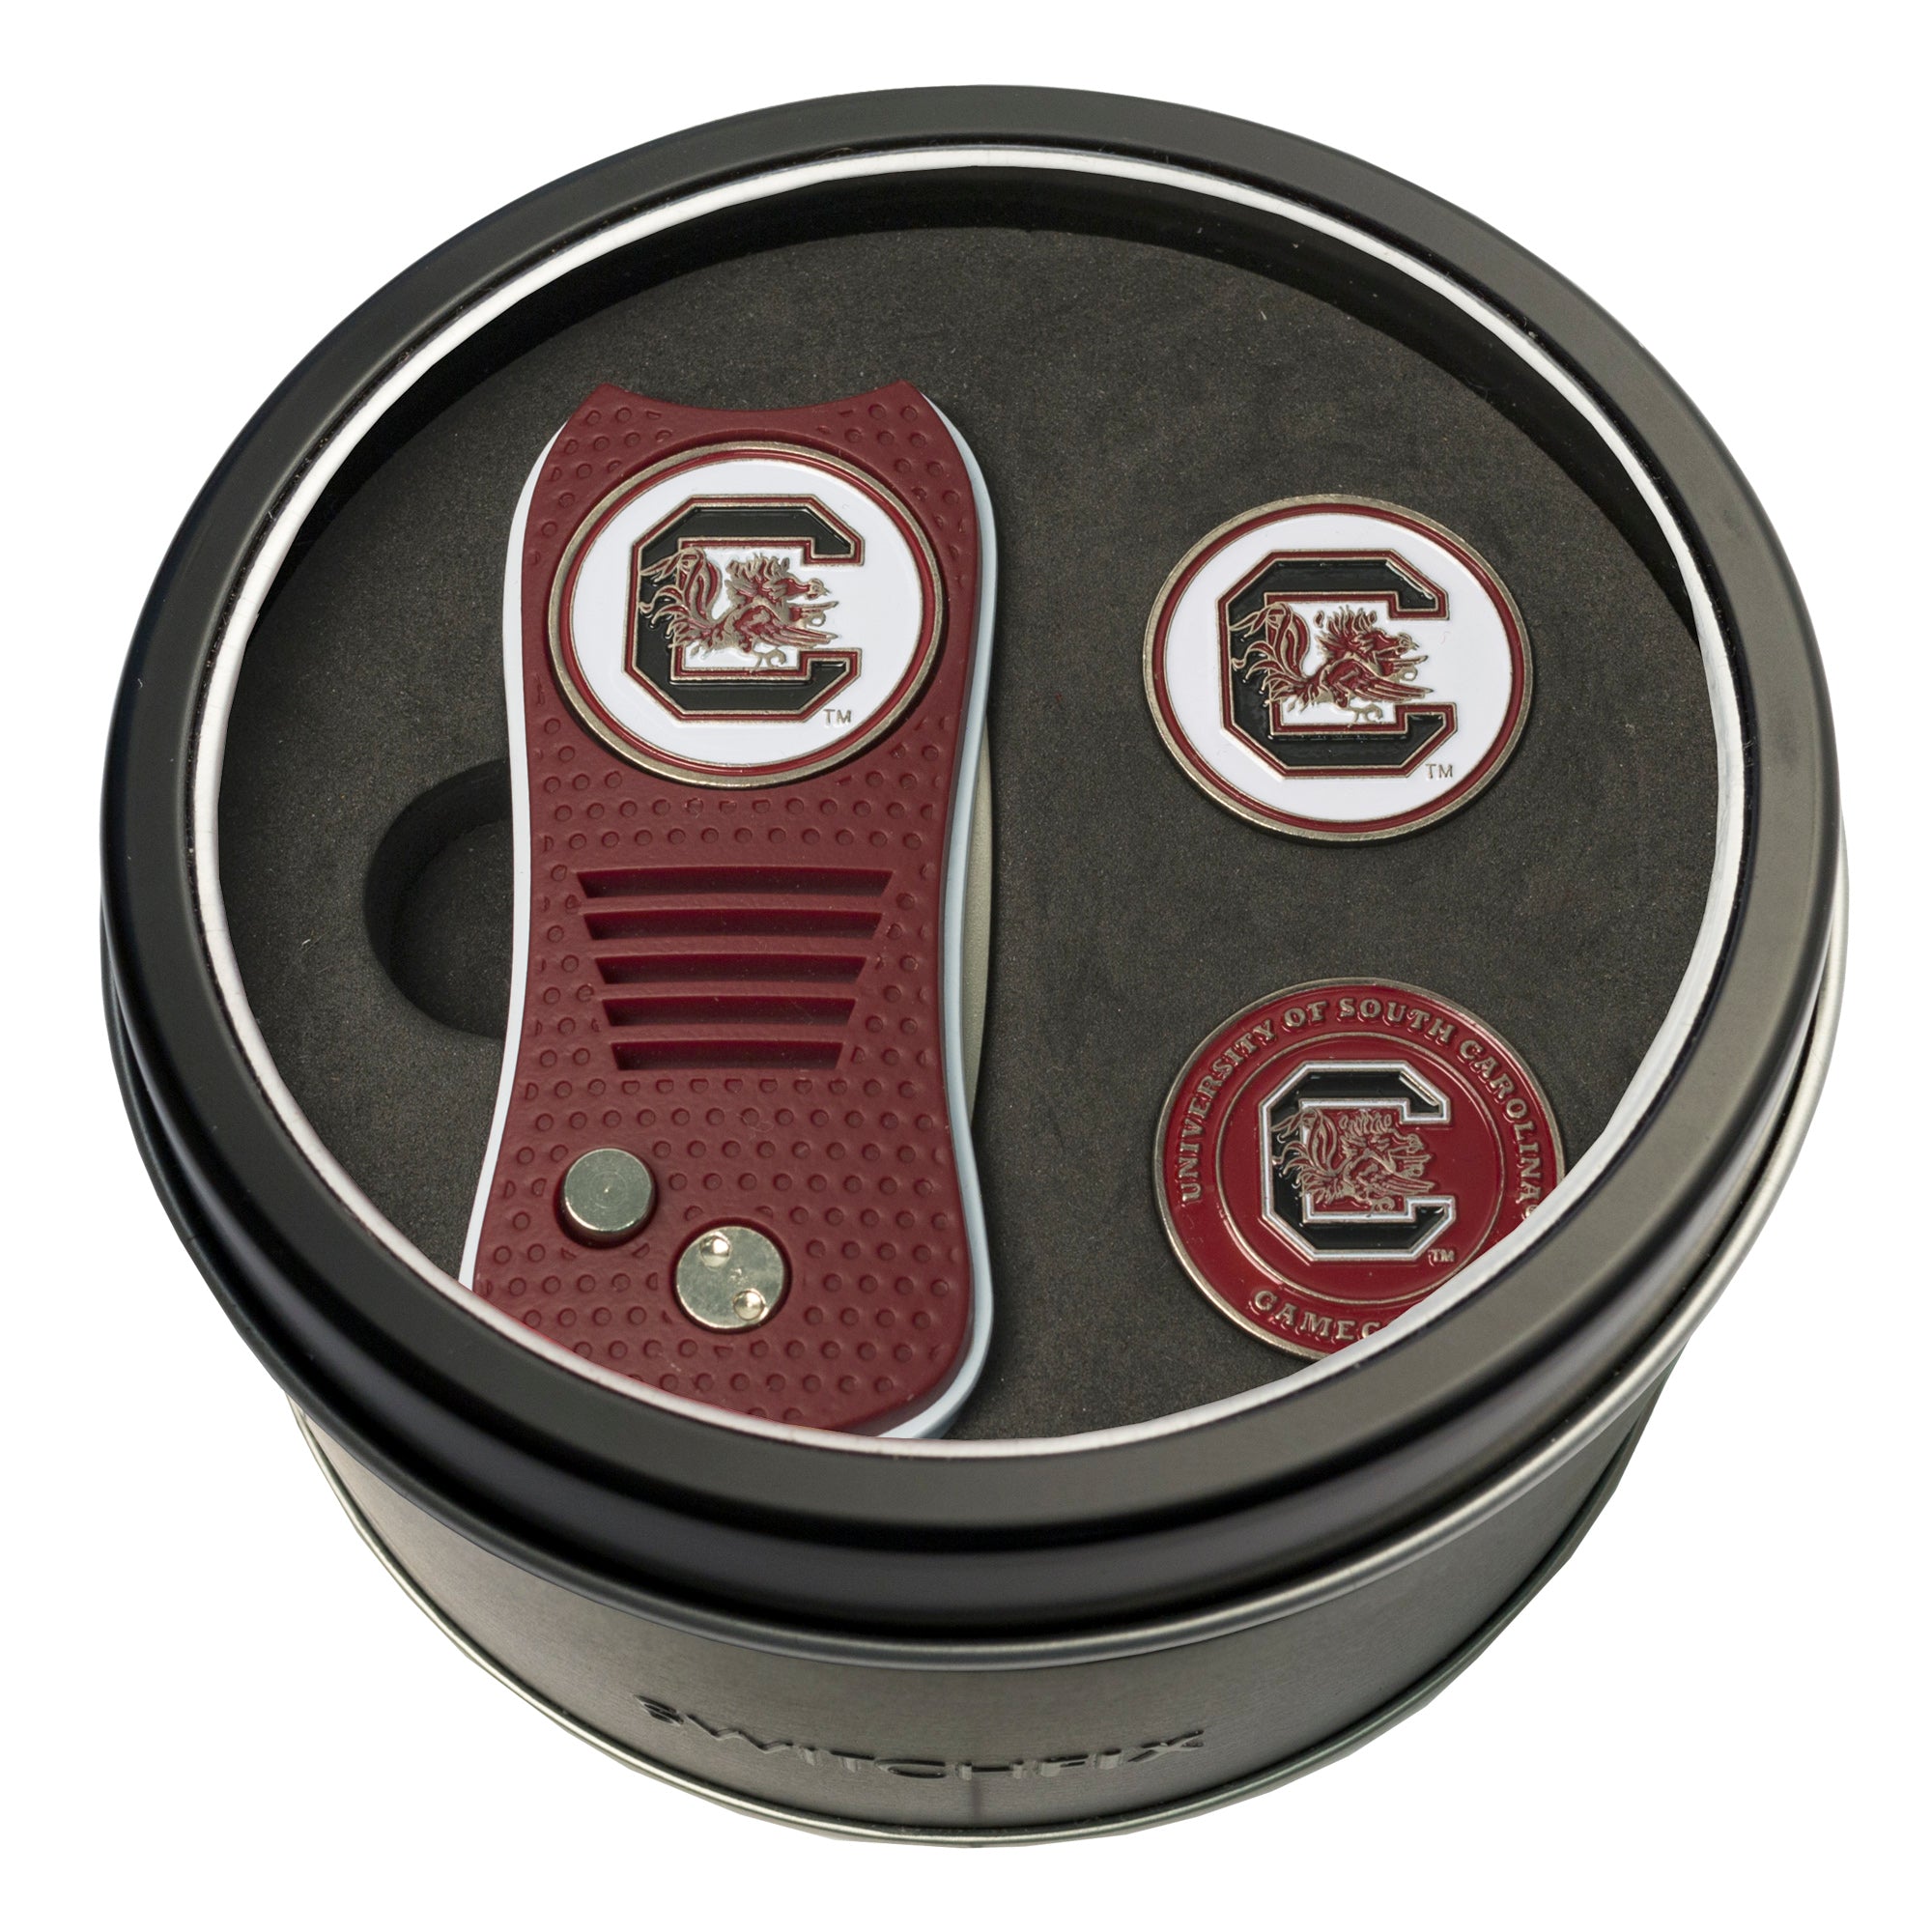 South Carolina Gamecocks Switchblade Divot Tool + 2 Ball Marker Tin Gift Set